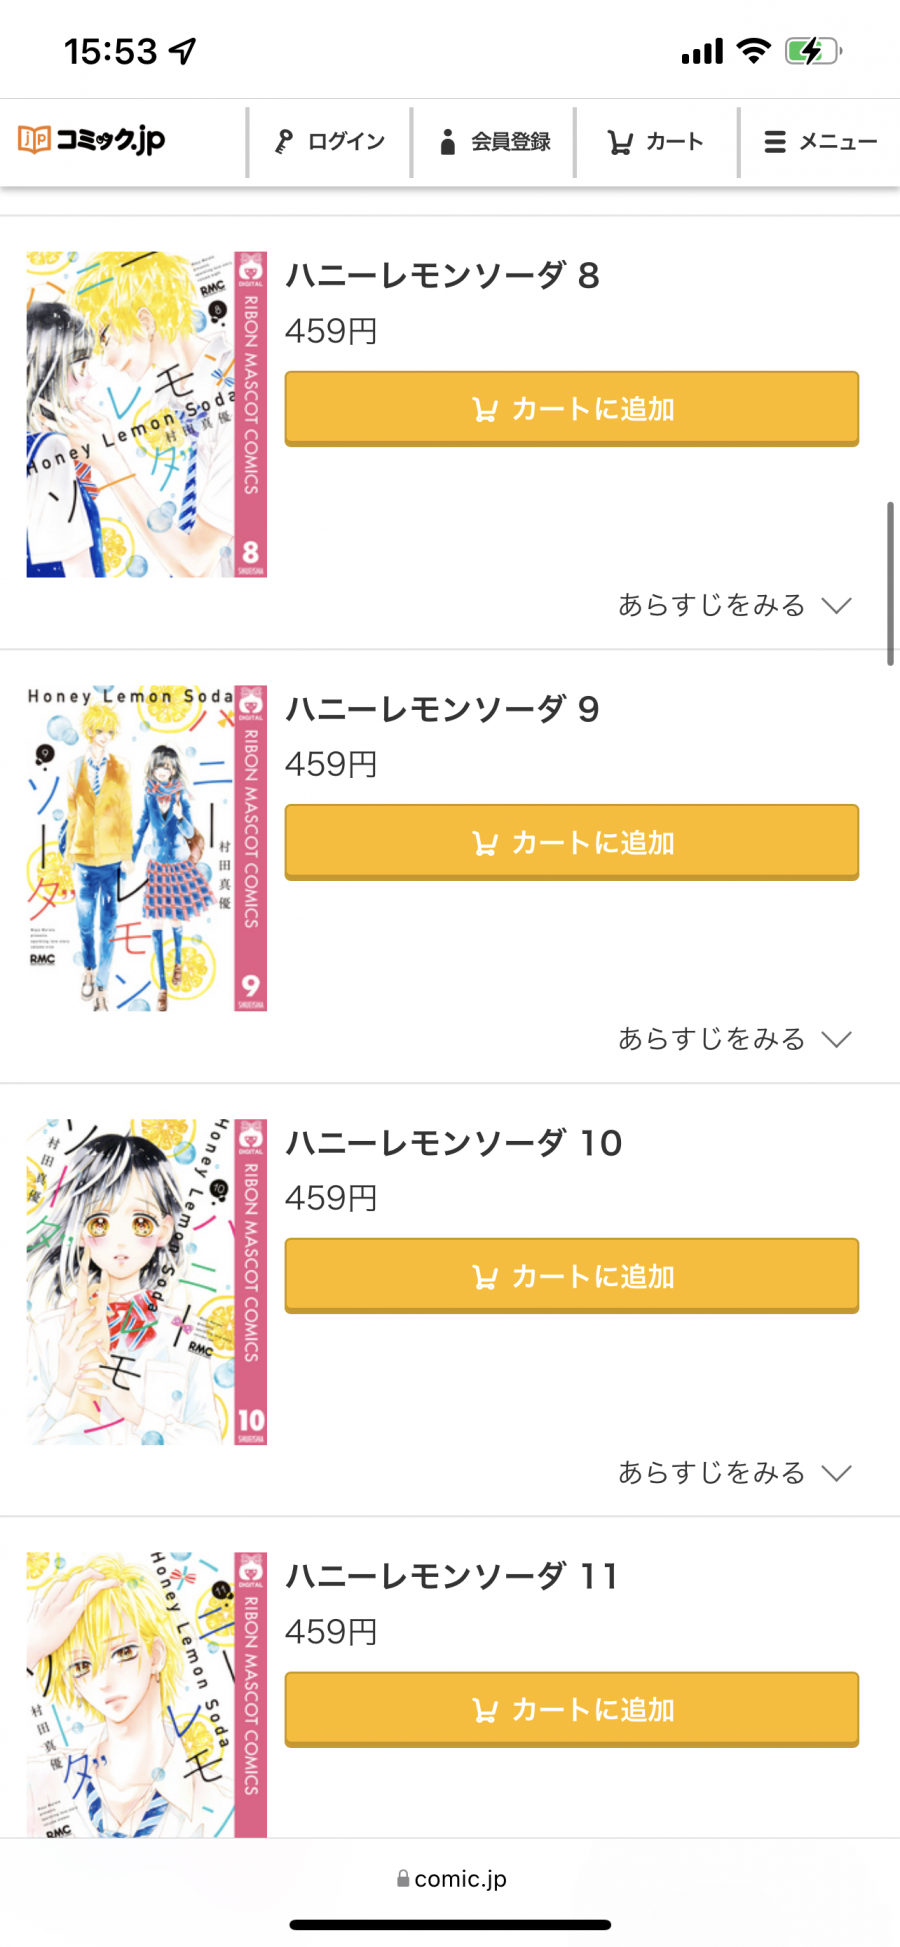 「コミック.jp」の『ハニーレモンソーダ』8〜11巻